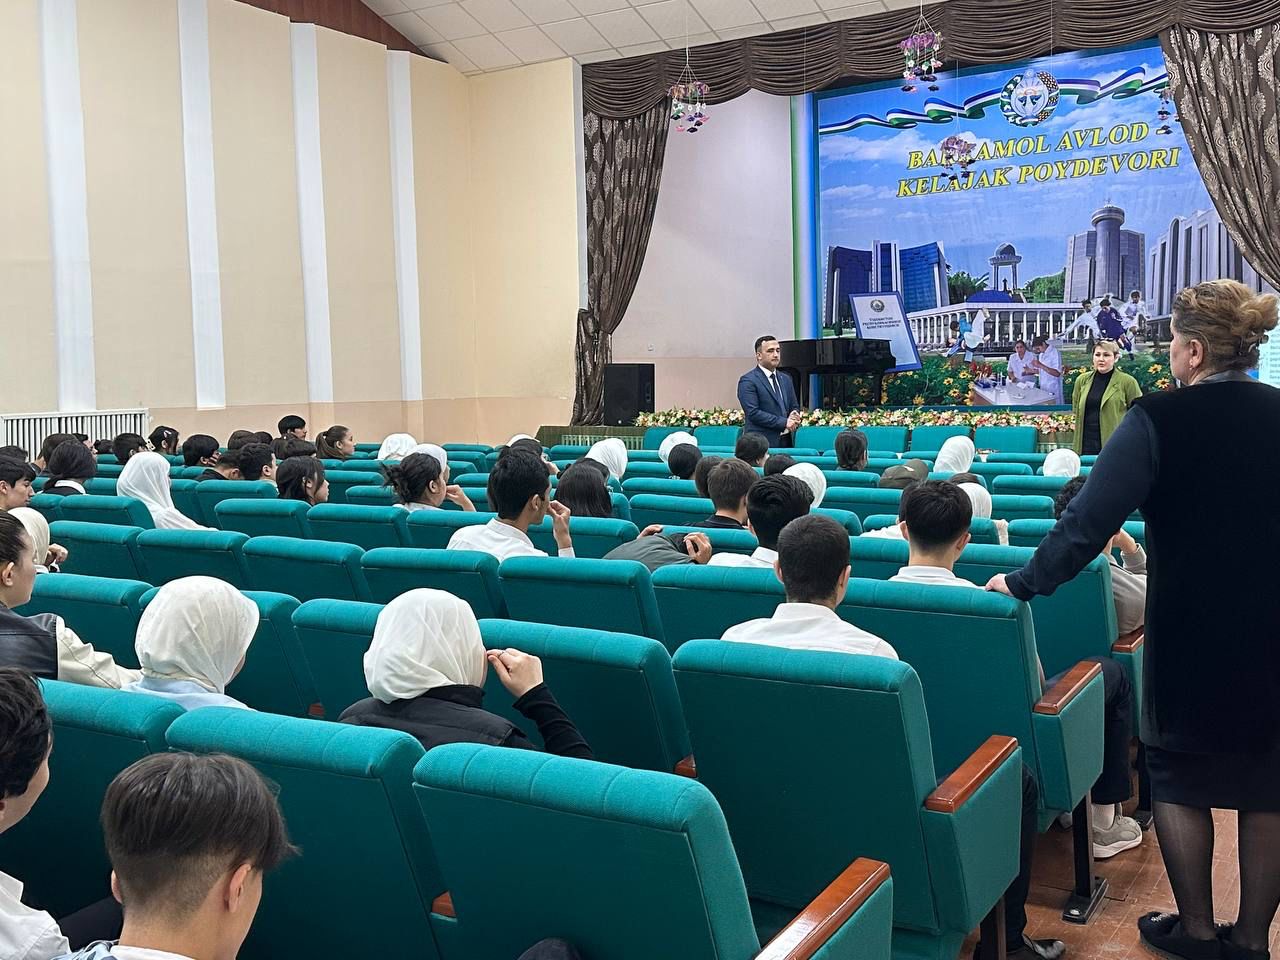 8 апреля дирекция Института физики посетила 127 общеобразовательную школу города Ташкент!